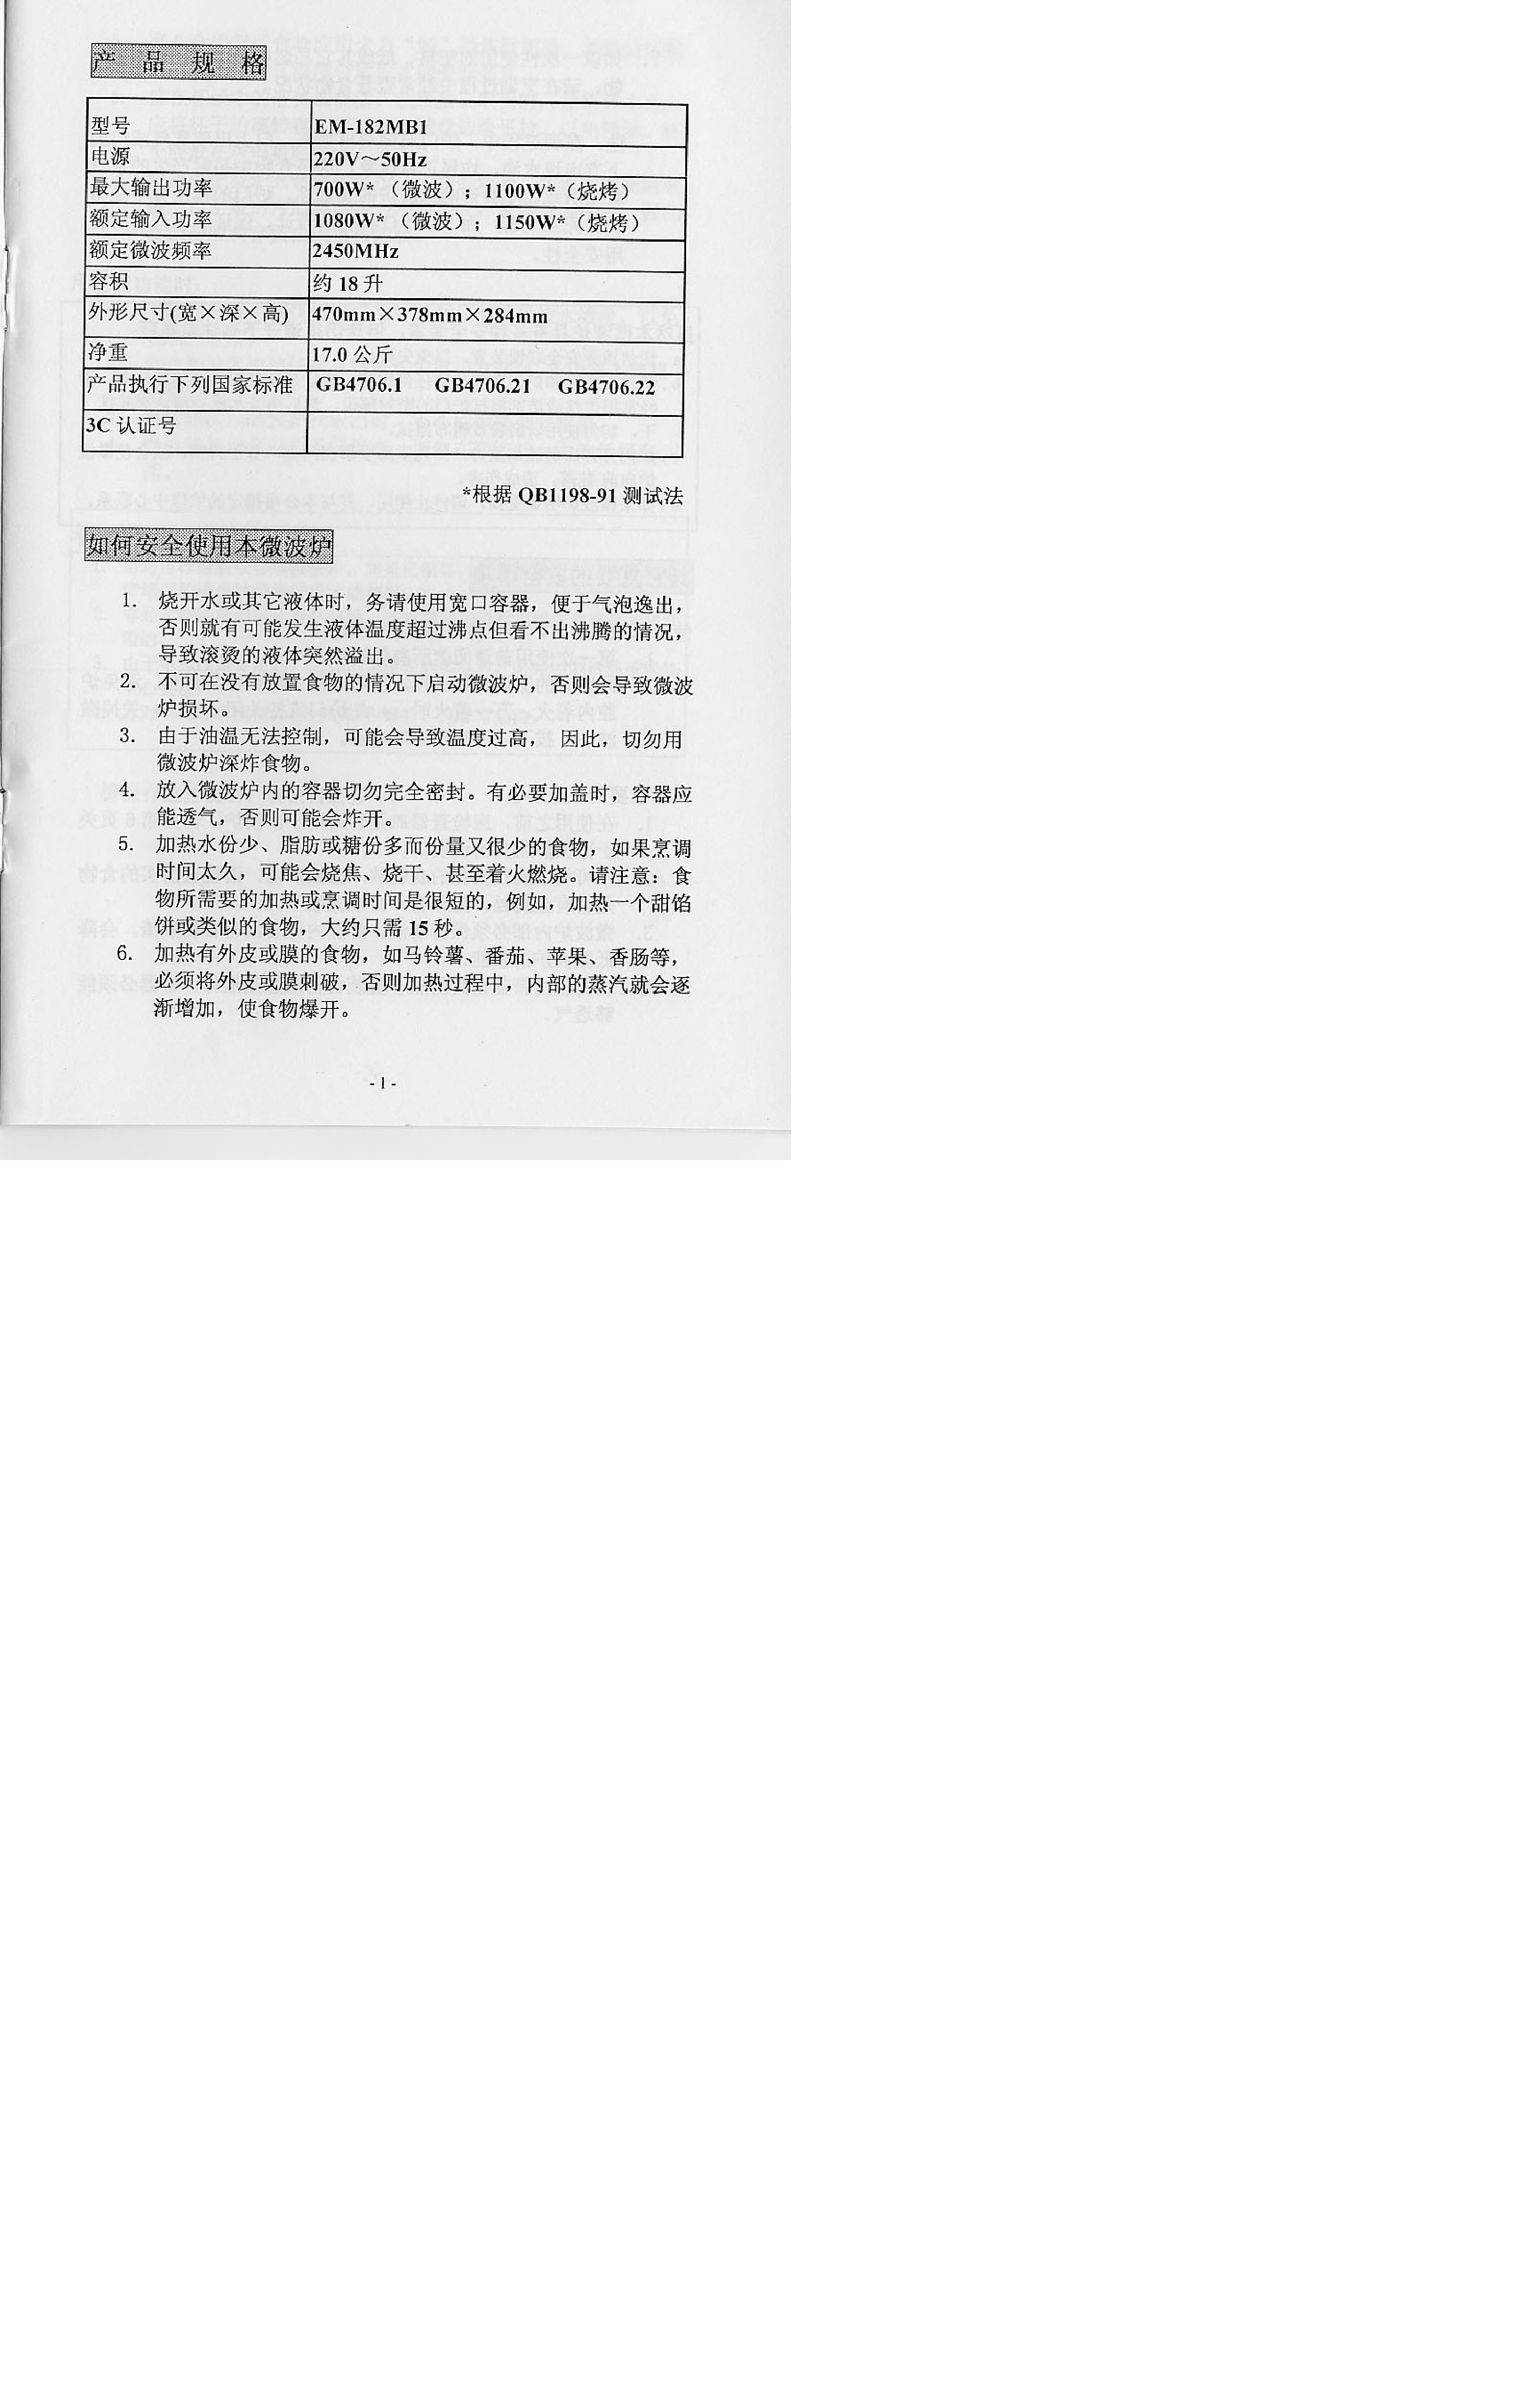 三洋 Sanyo EM-182MB1 说明书 第1页